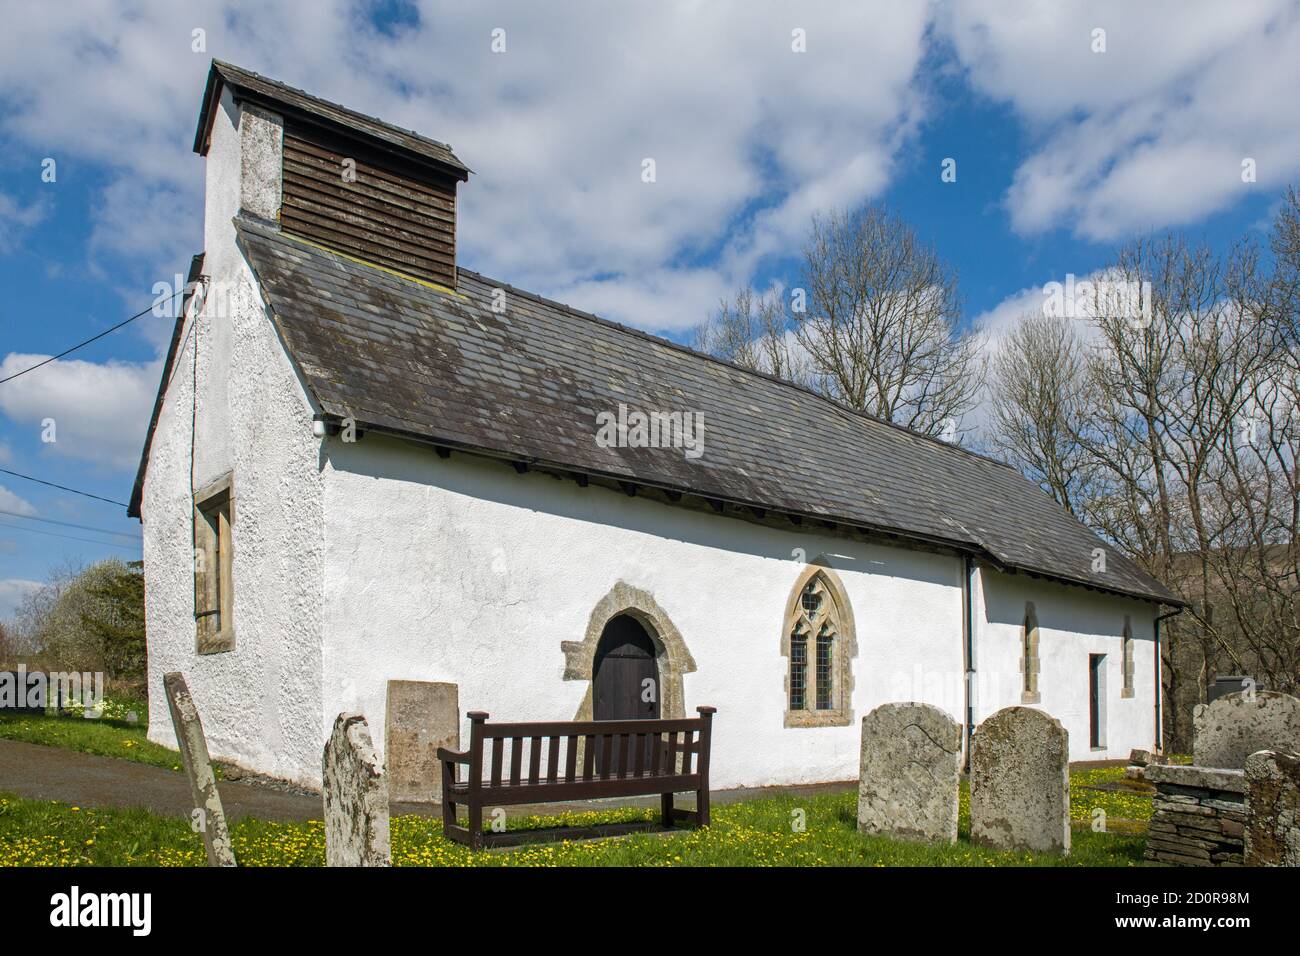 L'église de St Davids dans le village rural de Cregrina dans l'ancien comté de Radnorshire, maintenant subsumée dans le plus grand comté de Powys. Banque D'Images